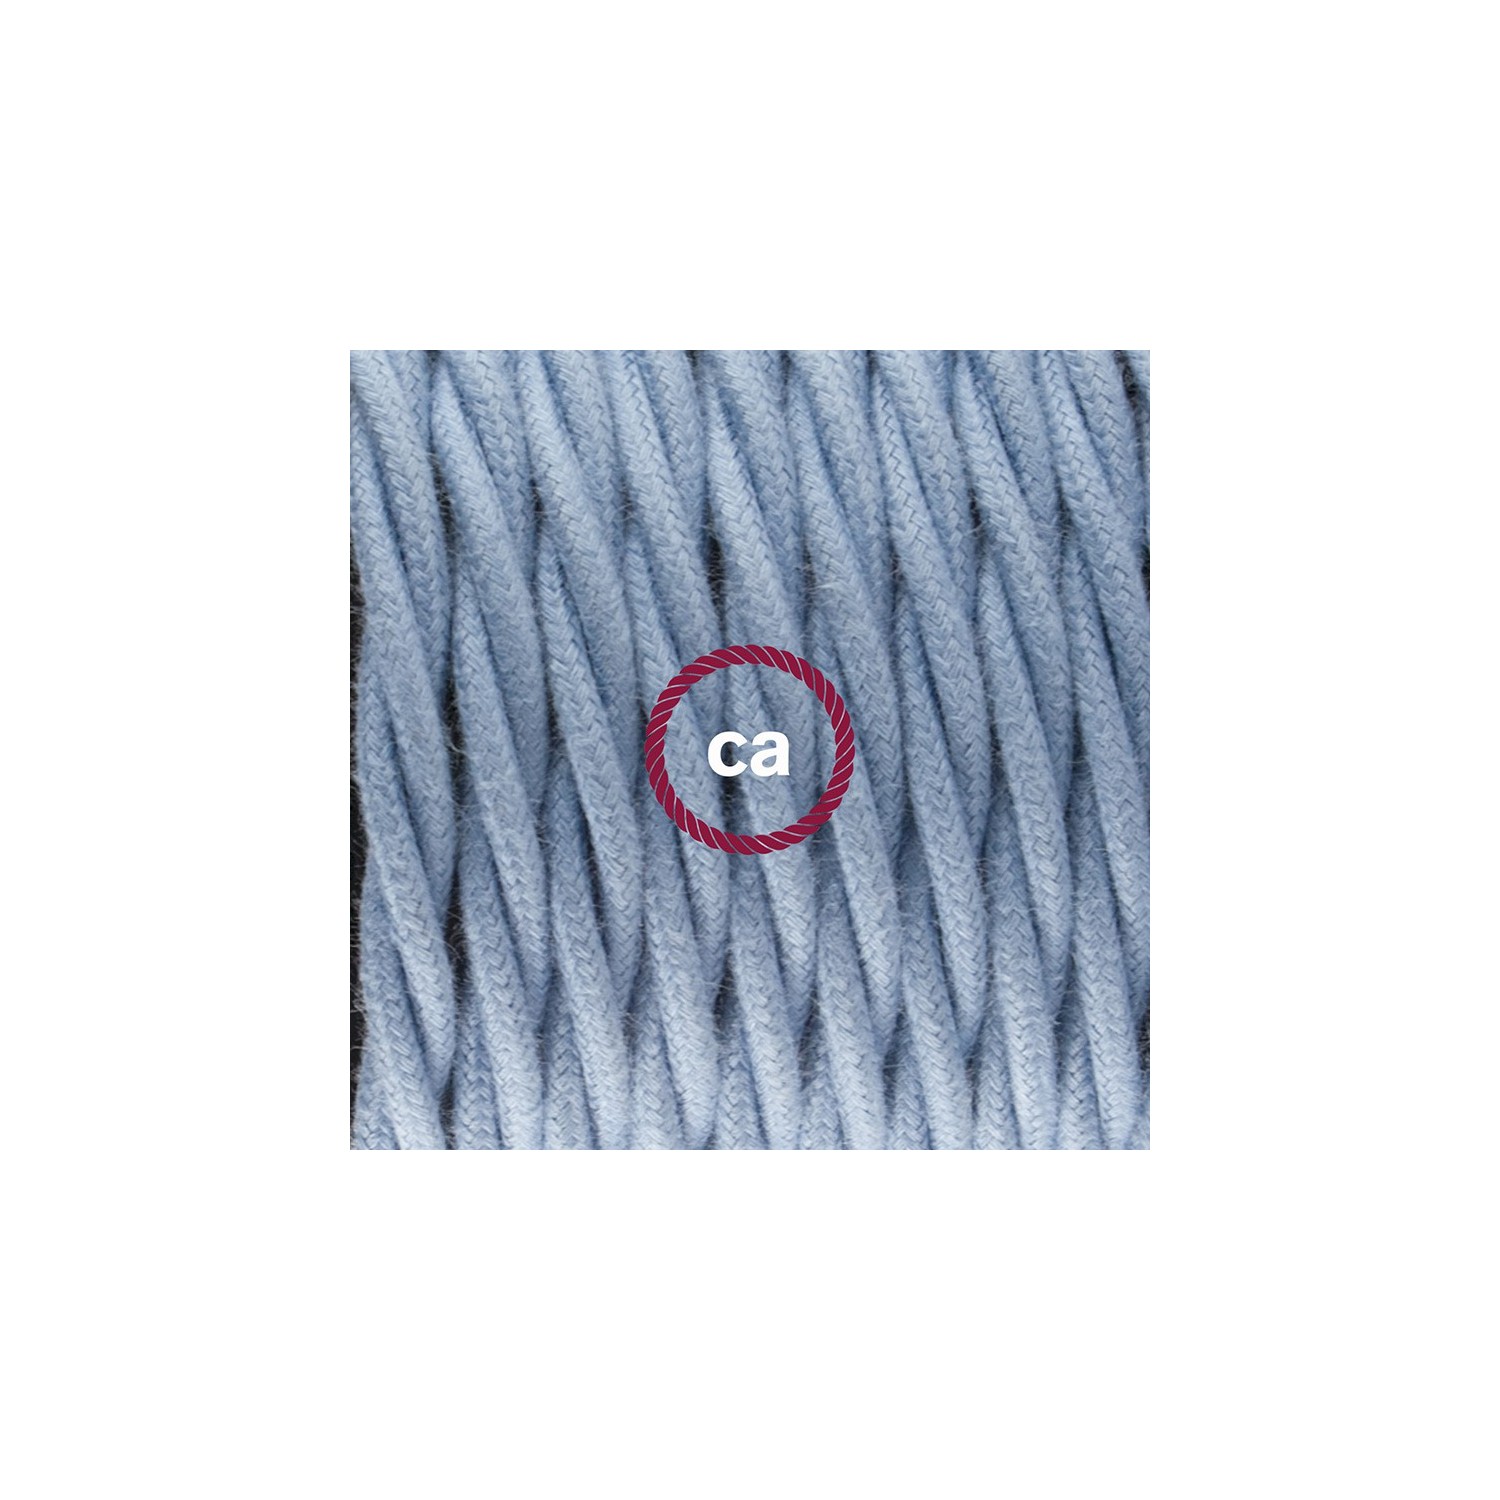 Gevlochten flexibele textielkabel van katoen met schakelaar en stekker. TC53 - oceaan blauw 1,80 m.